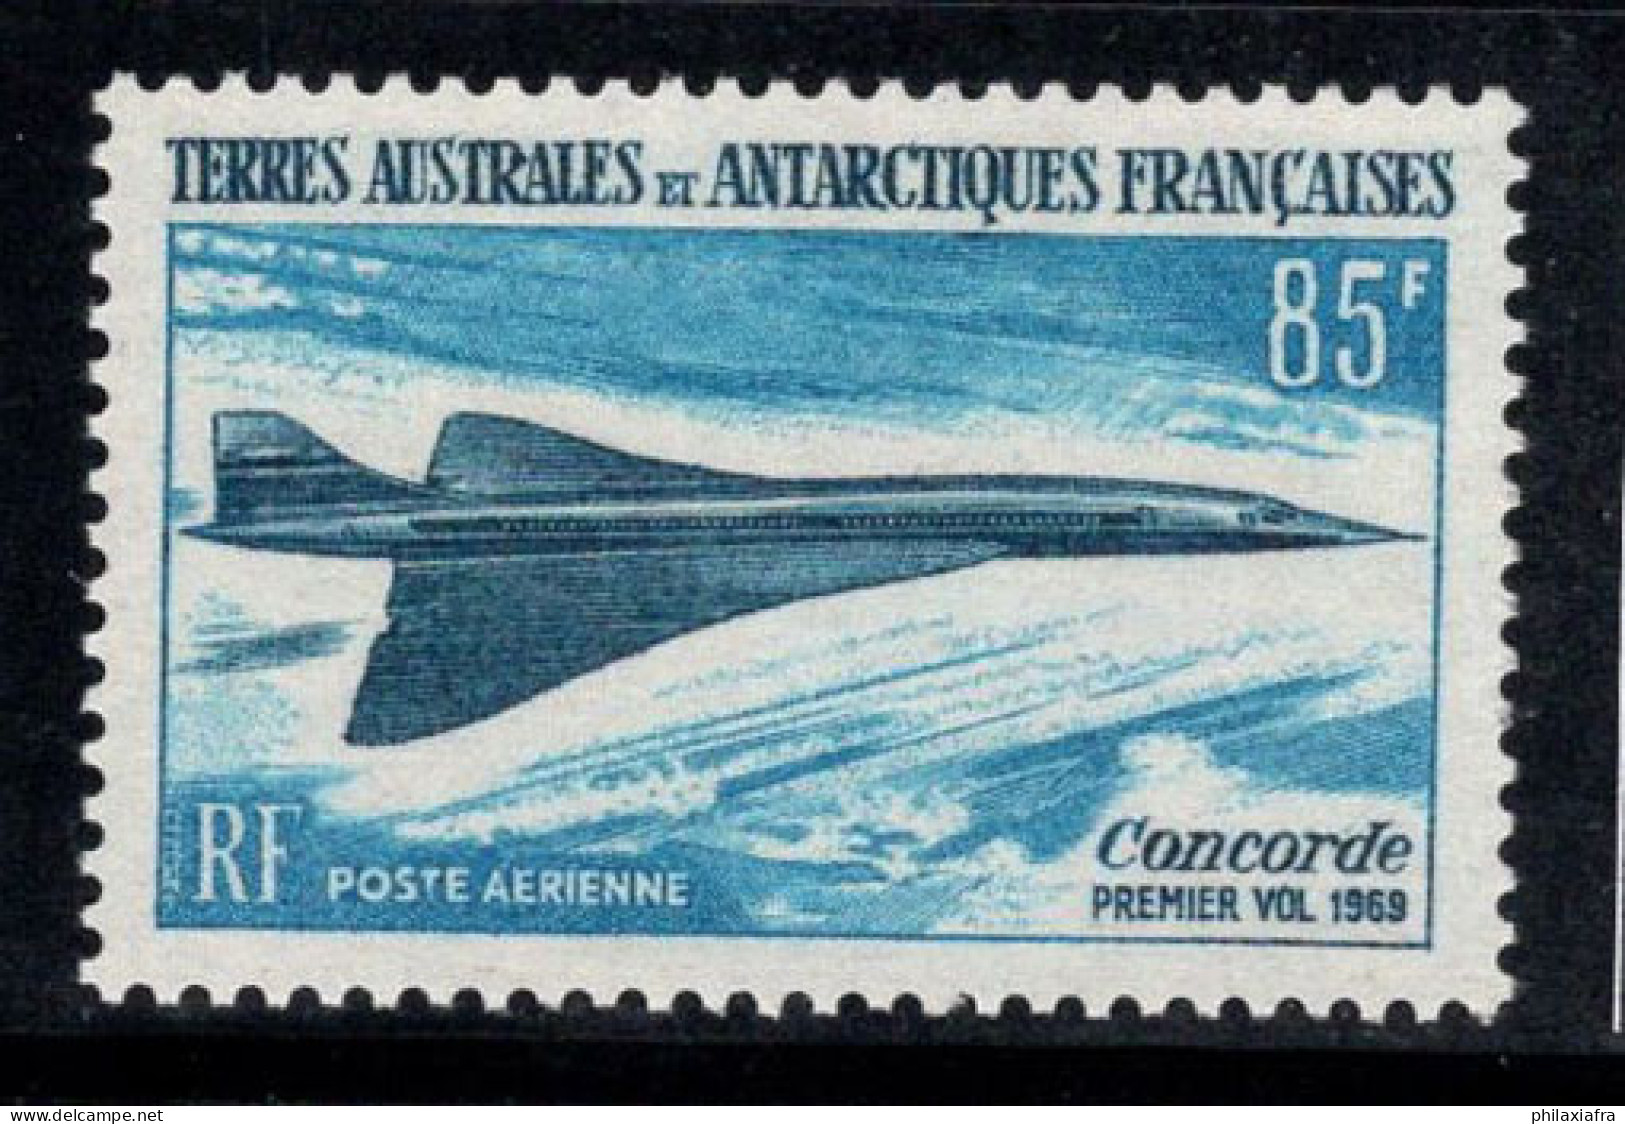 Territoire Antarctique Français TAAF 1969 Mi. 51 Neuf ** 100% Poste Aérienne 85 Fr, Le Concorde,Avion - Neufs